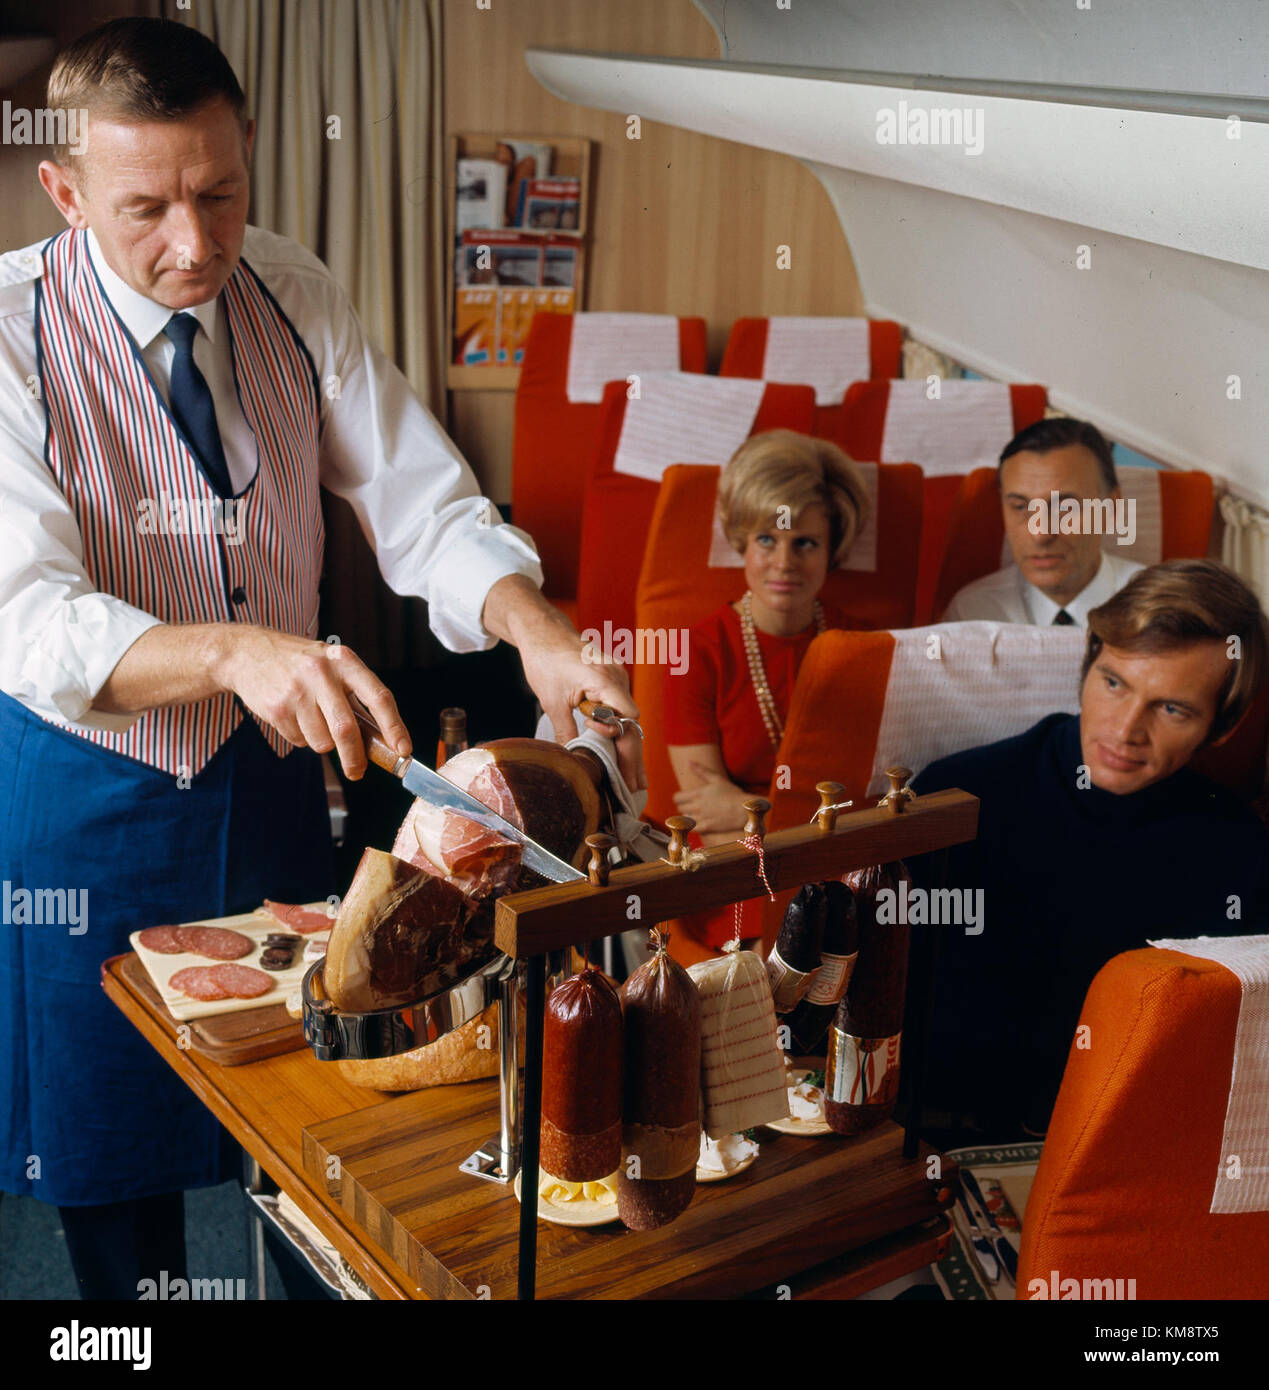 SAS DC 8 33. Intérieur de la cabine. Service à bord, steward servant un buffet scandinave de style campagnard Banque D'Images